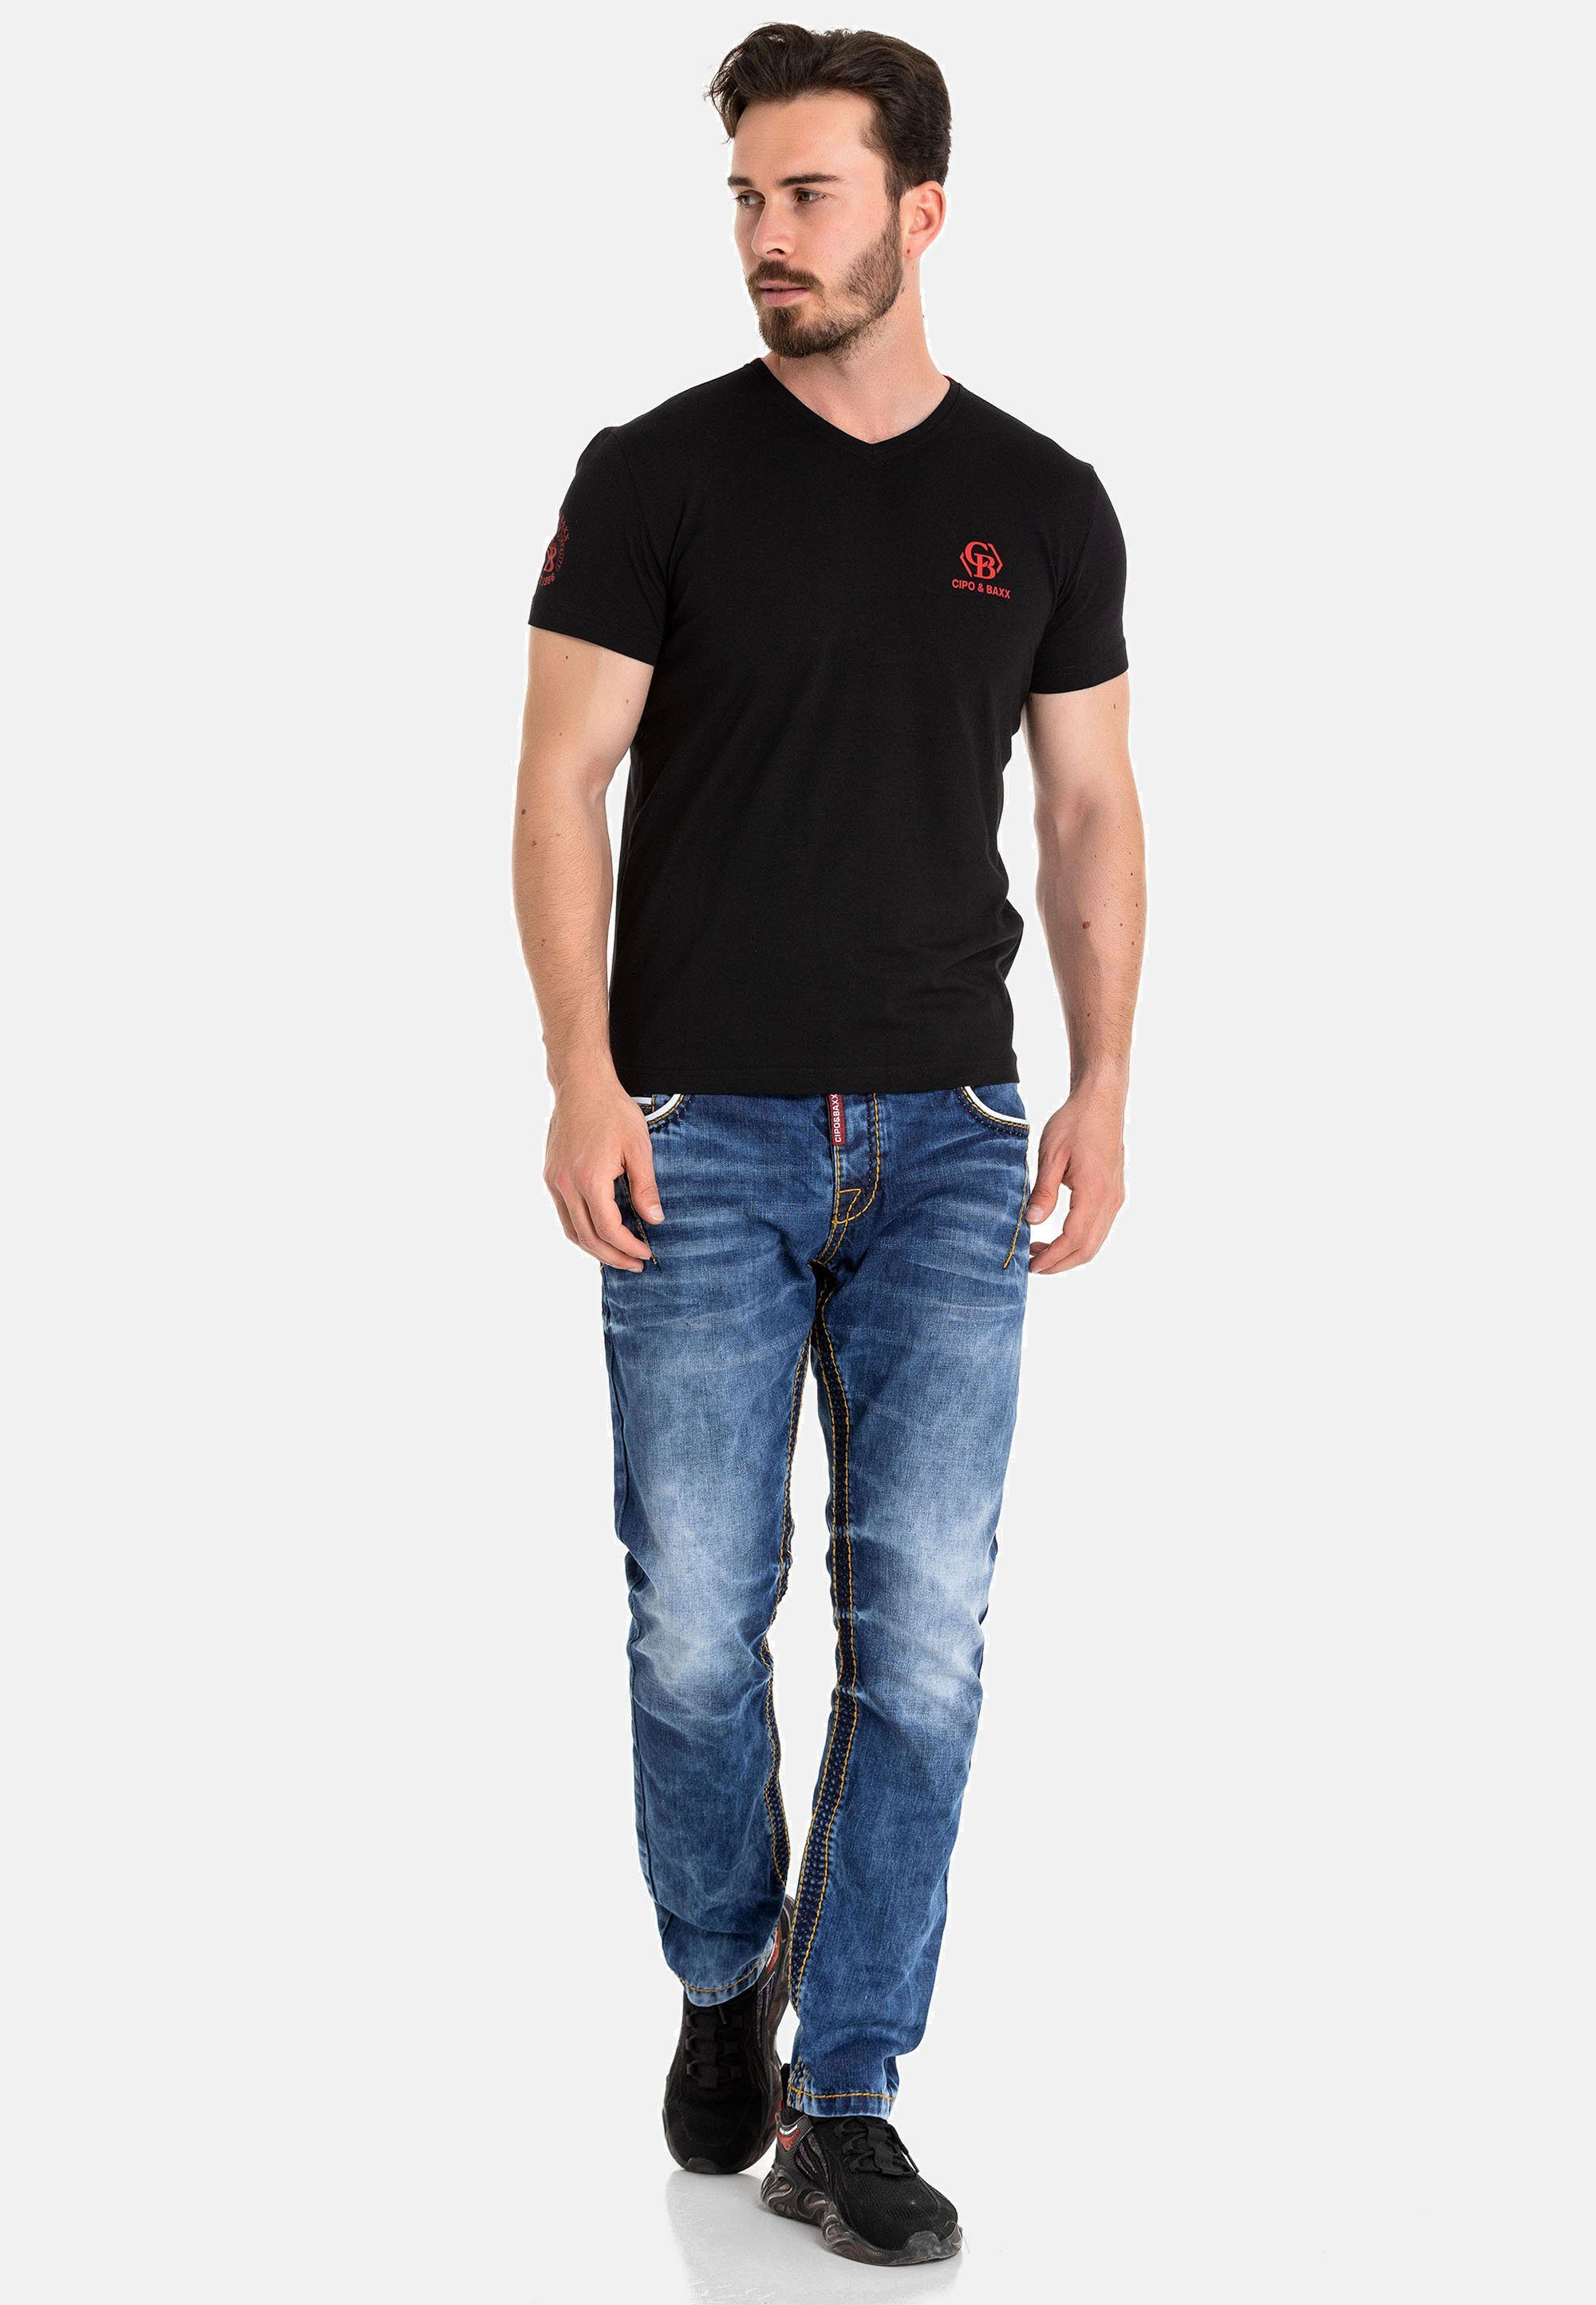 & Baxx Markenlogos T-Shirt mit Cipo schwarz dezenten